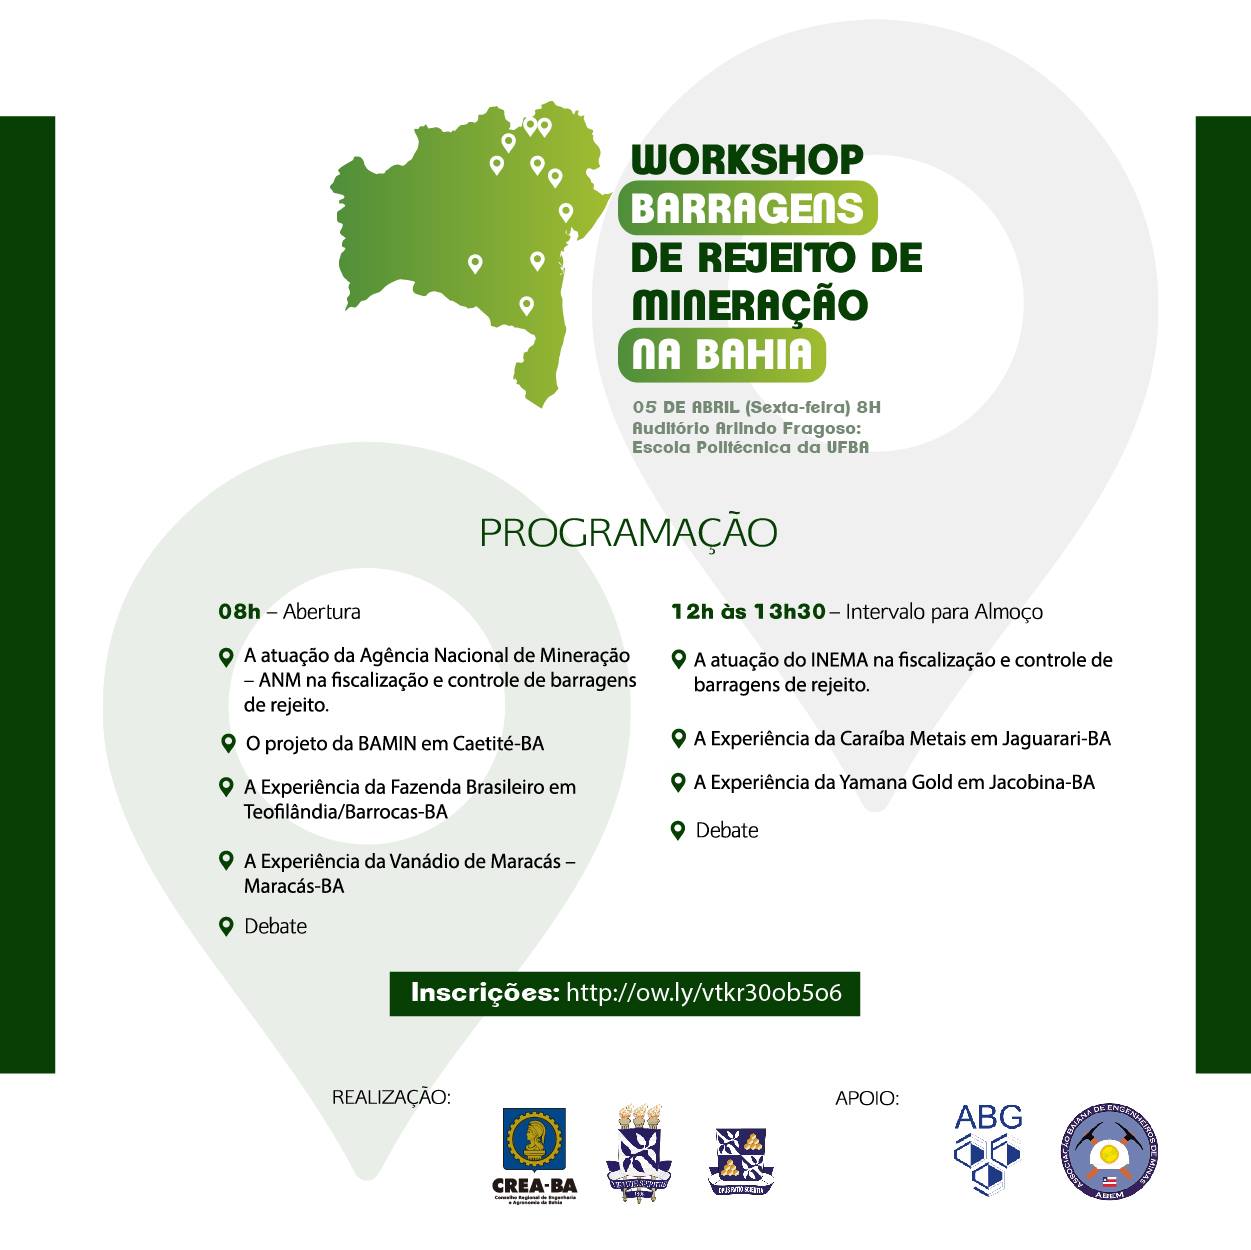 Workshop: Barragens de Rejeito de Mineração na Bahia